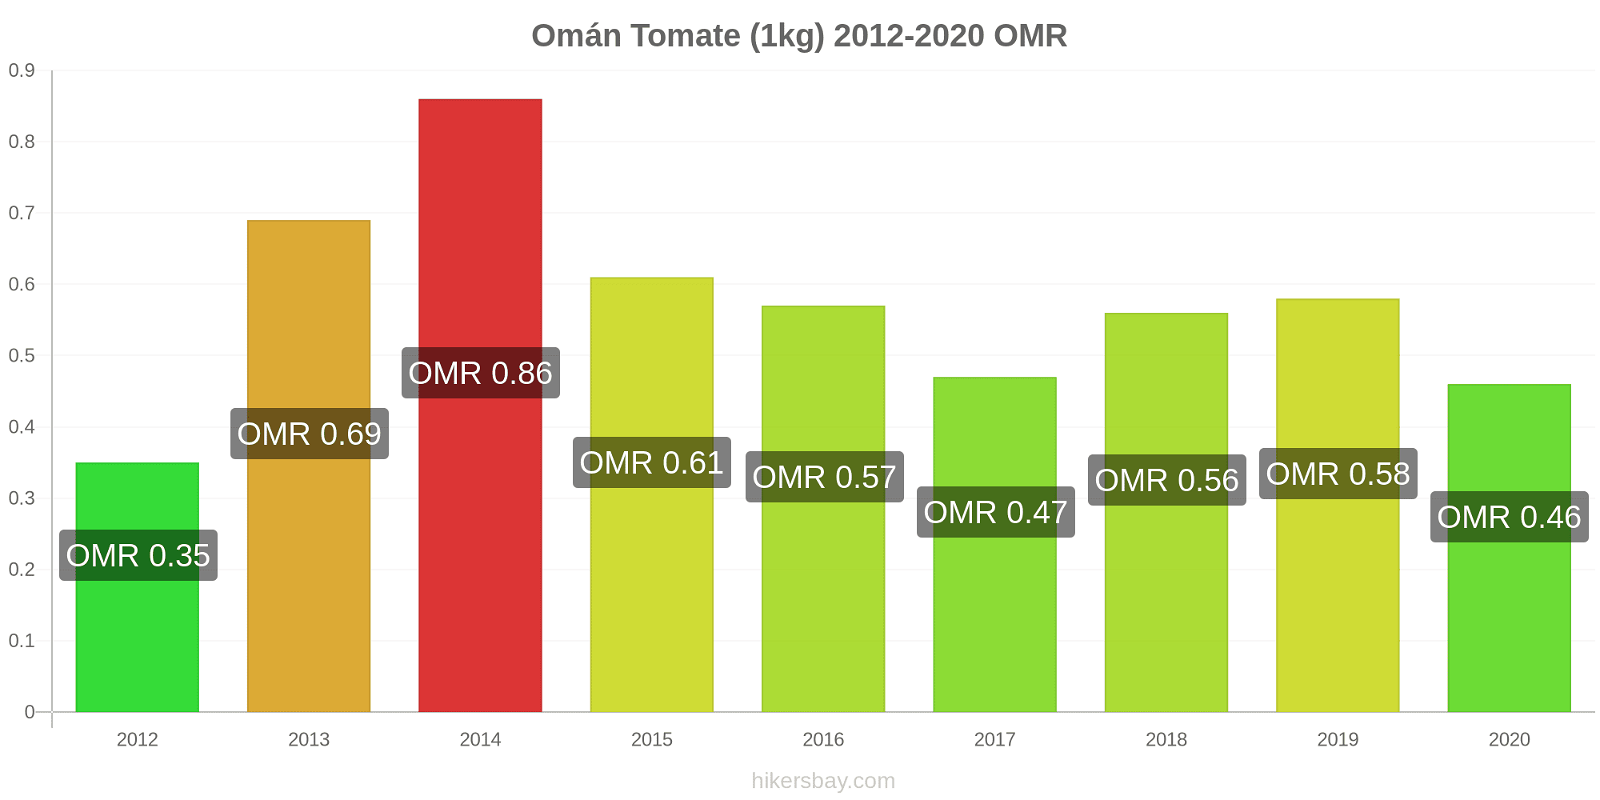 Omán cambios de precios Tomate (1kg) hikersbay.com